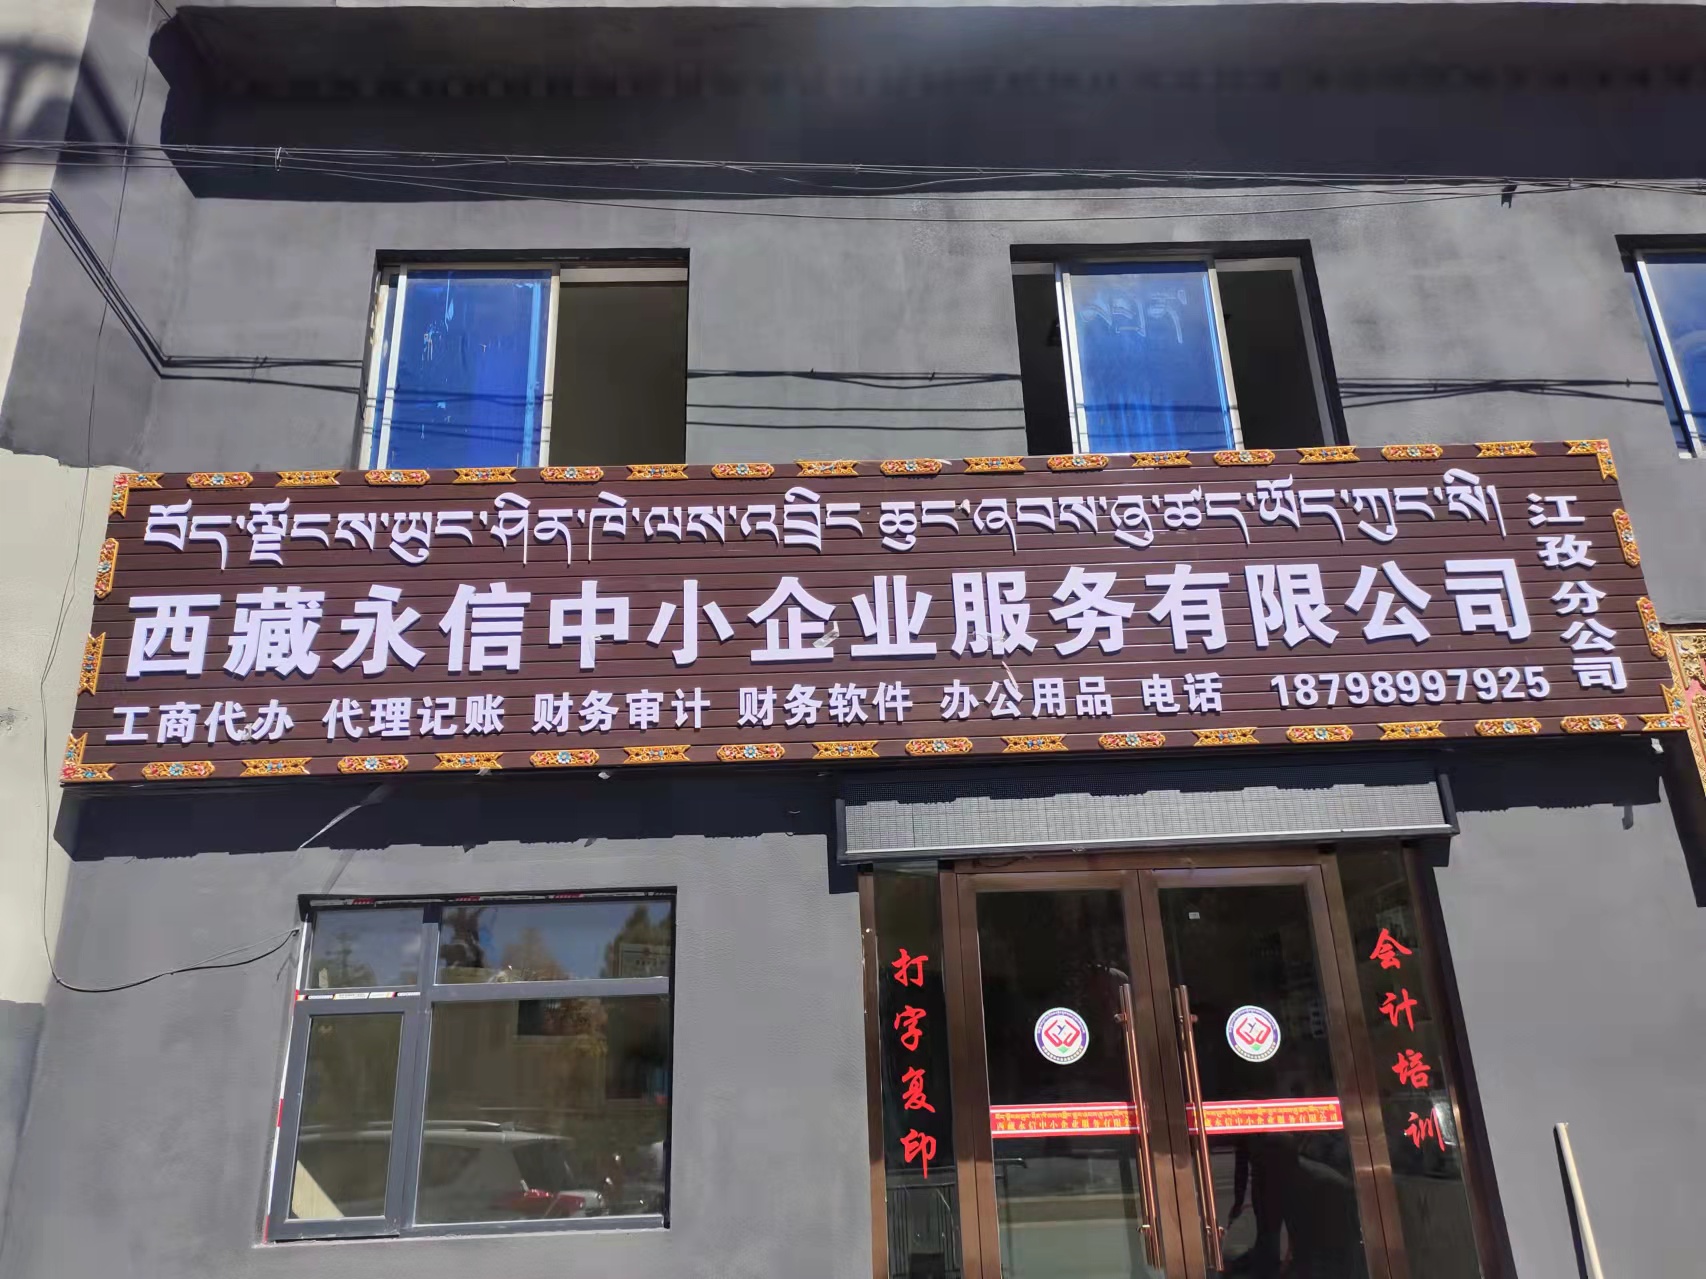 西藏永信中小企業服務有限公司江孜分公司10月12日正式開業啦